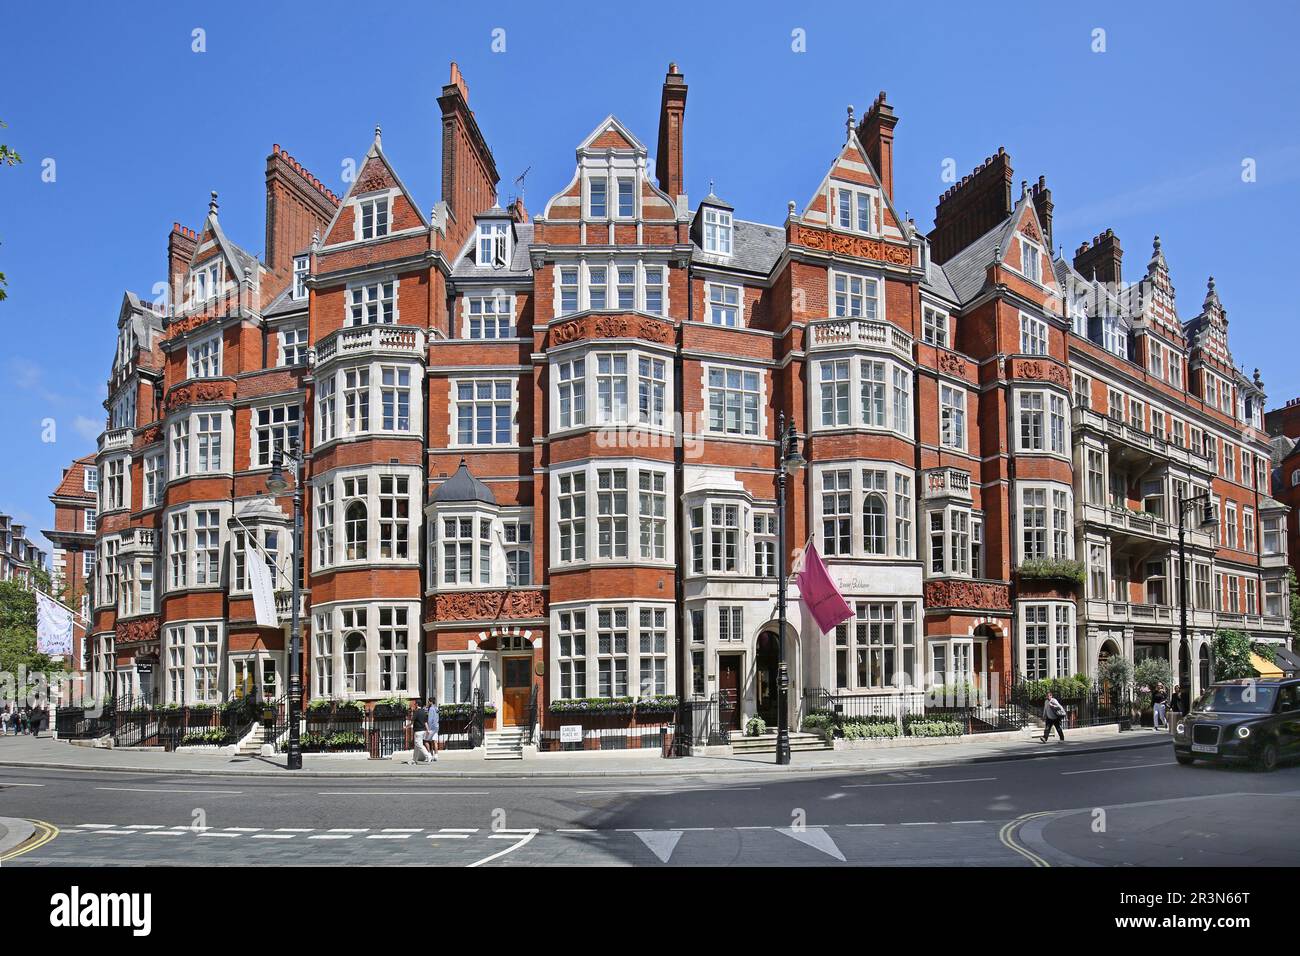 Appartements de luxe sur Carlos place, Mayfair, Londres, Royaume-Uni. Montre une façade ornée et incurvée à l'angle de Carlos place et Mount Street Banque D'Images